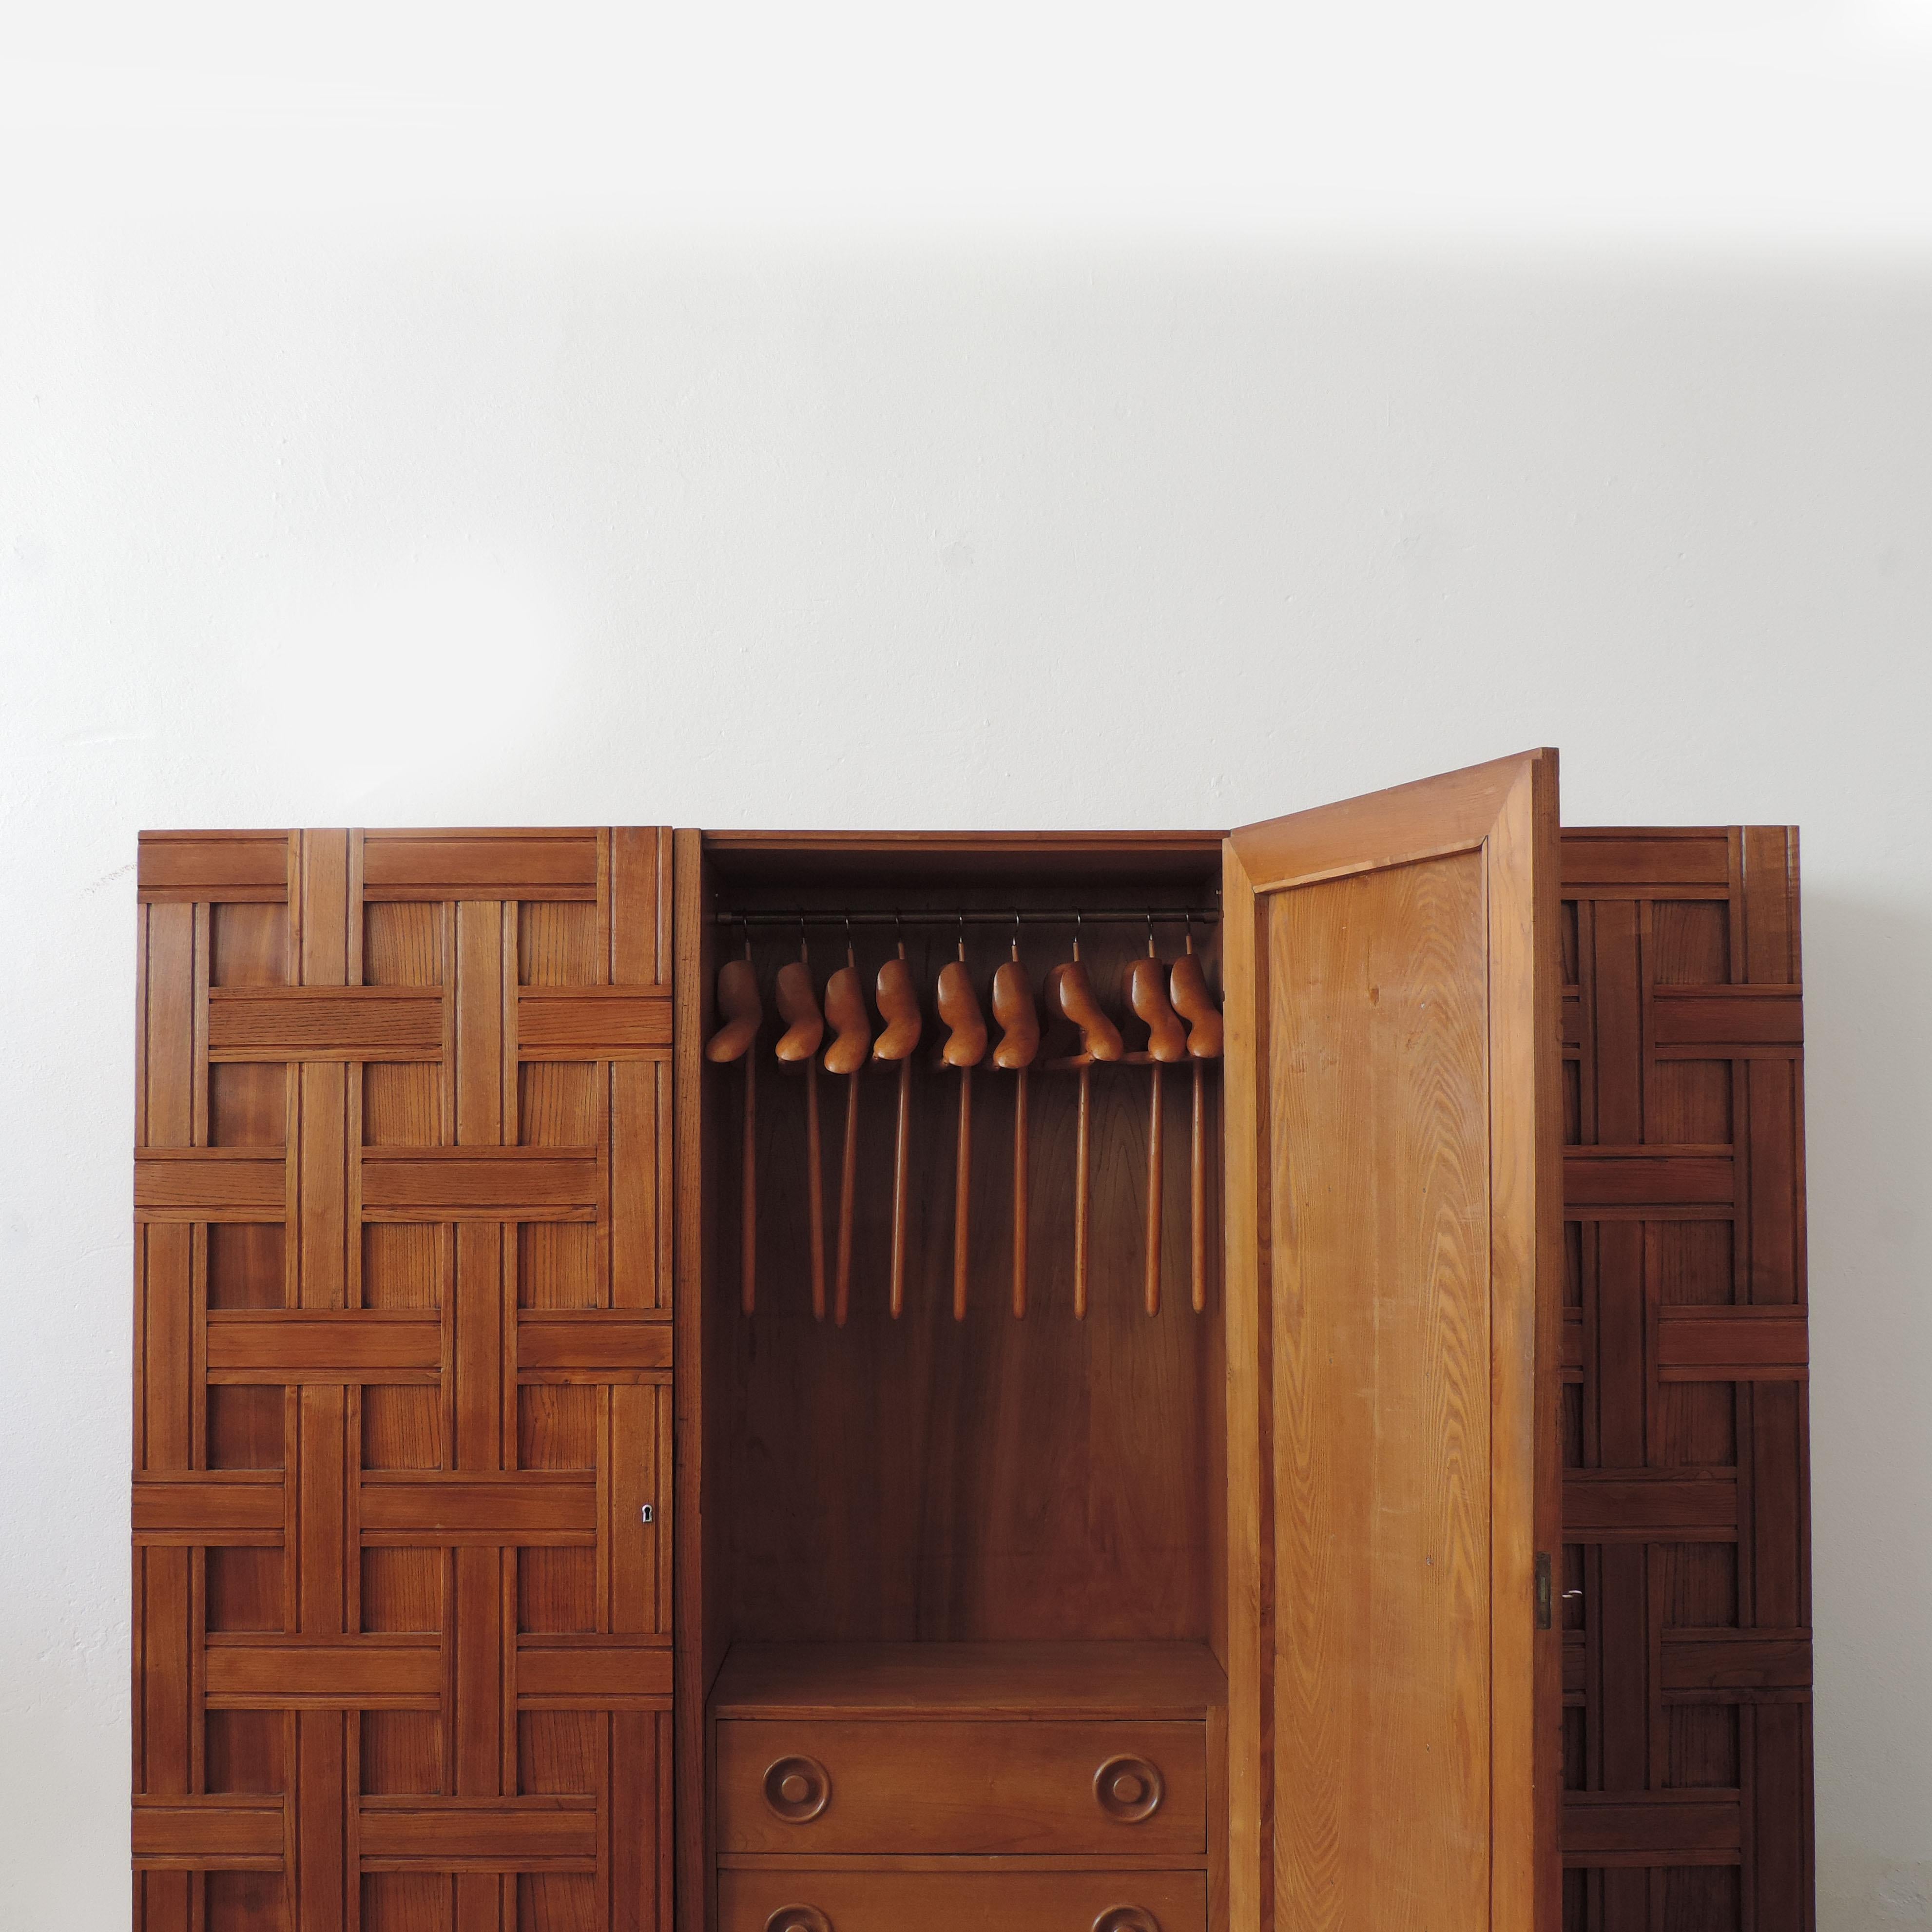 Architect Paolo Buffa three-door oak wood cupboard.
Ref : L'Arredamento Moderno / Terza Serie / Roberto Aloi / 1947 / Hoepli Editore / Image 349.